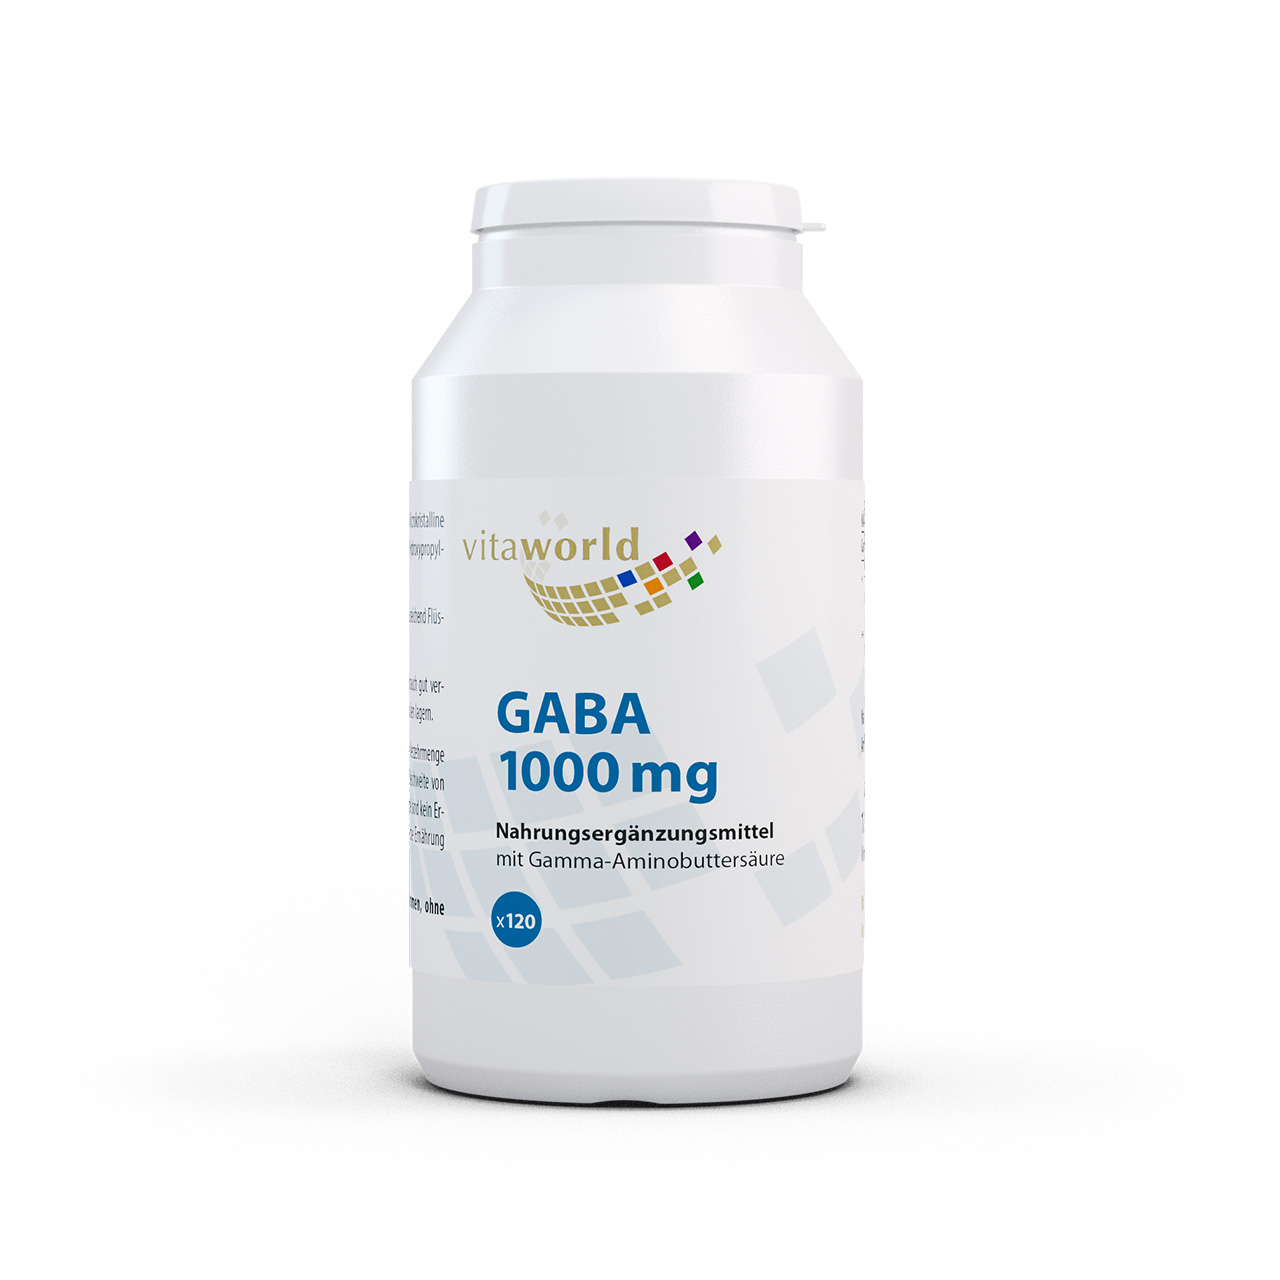 Vita World Gaba 500 mg | 120 Tabletten | vegan | gluten- und laktosefrei